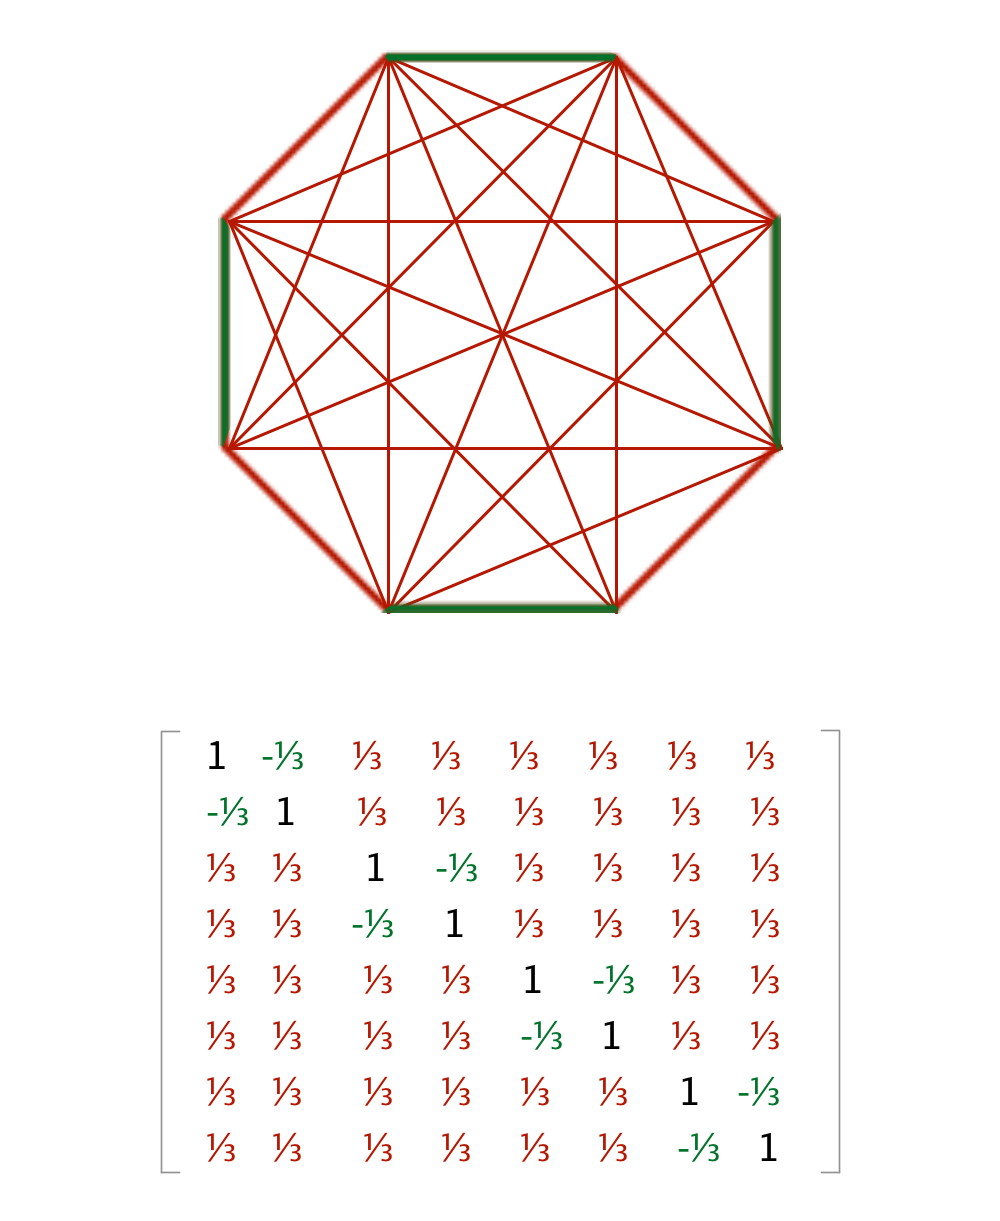 类似的方法也可以应用在更高维度中，比如五维中8条直线的图和矩阵。